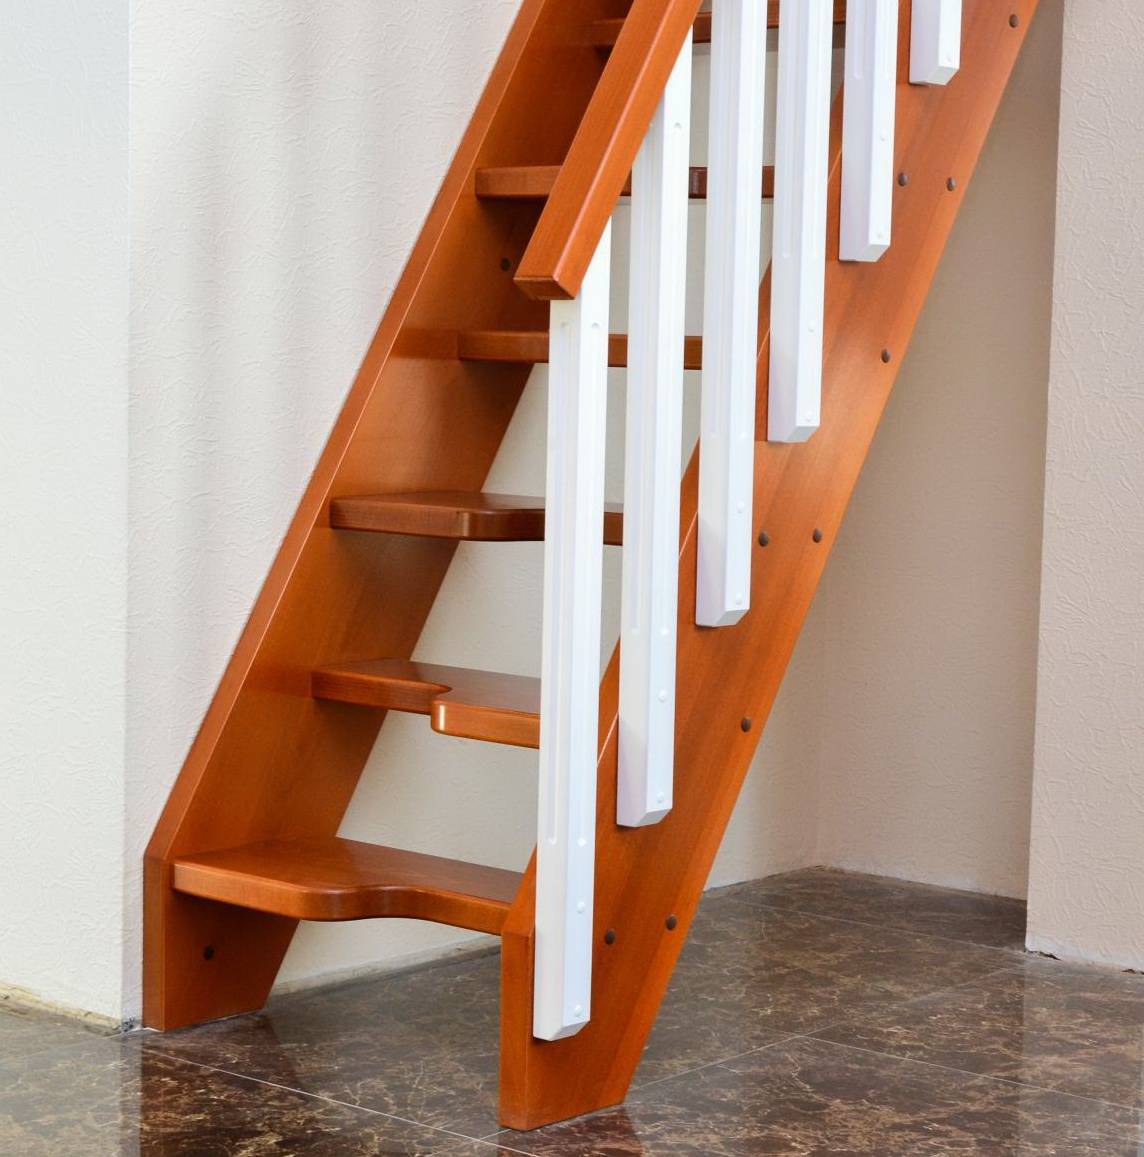 Лестница гусиный шаг своими руками пошаговая инструкция — чертежи и схемы